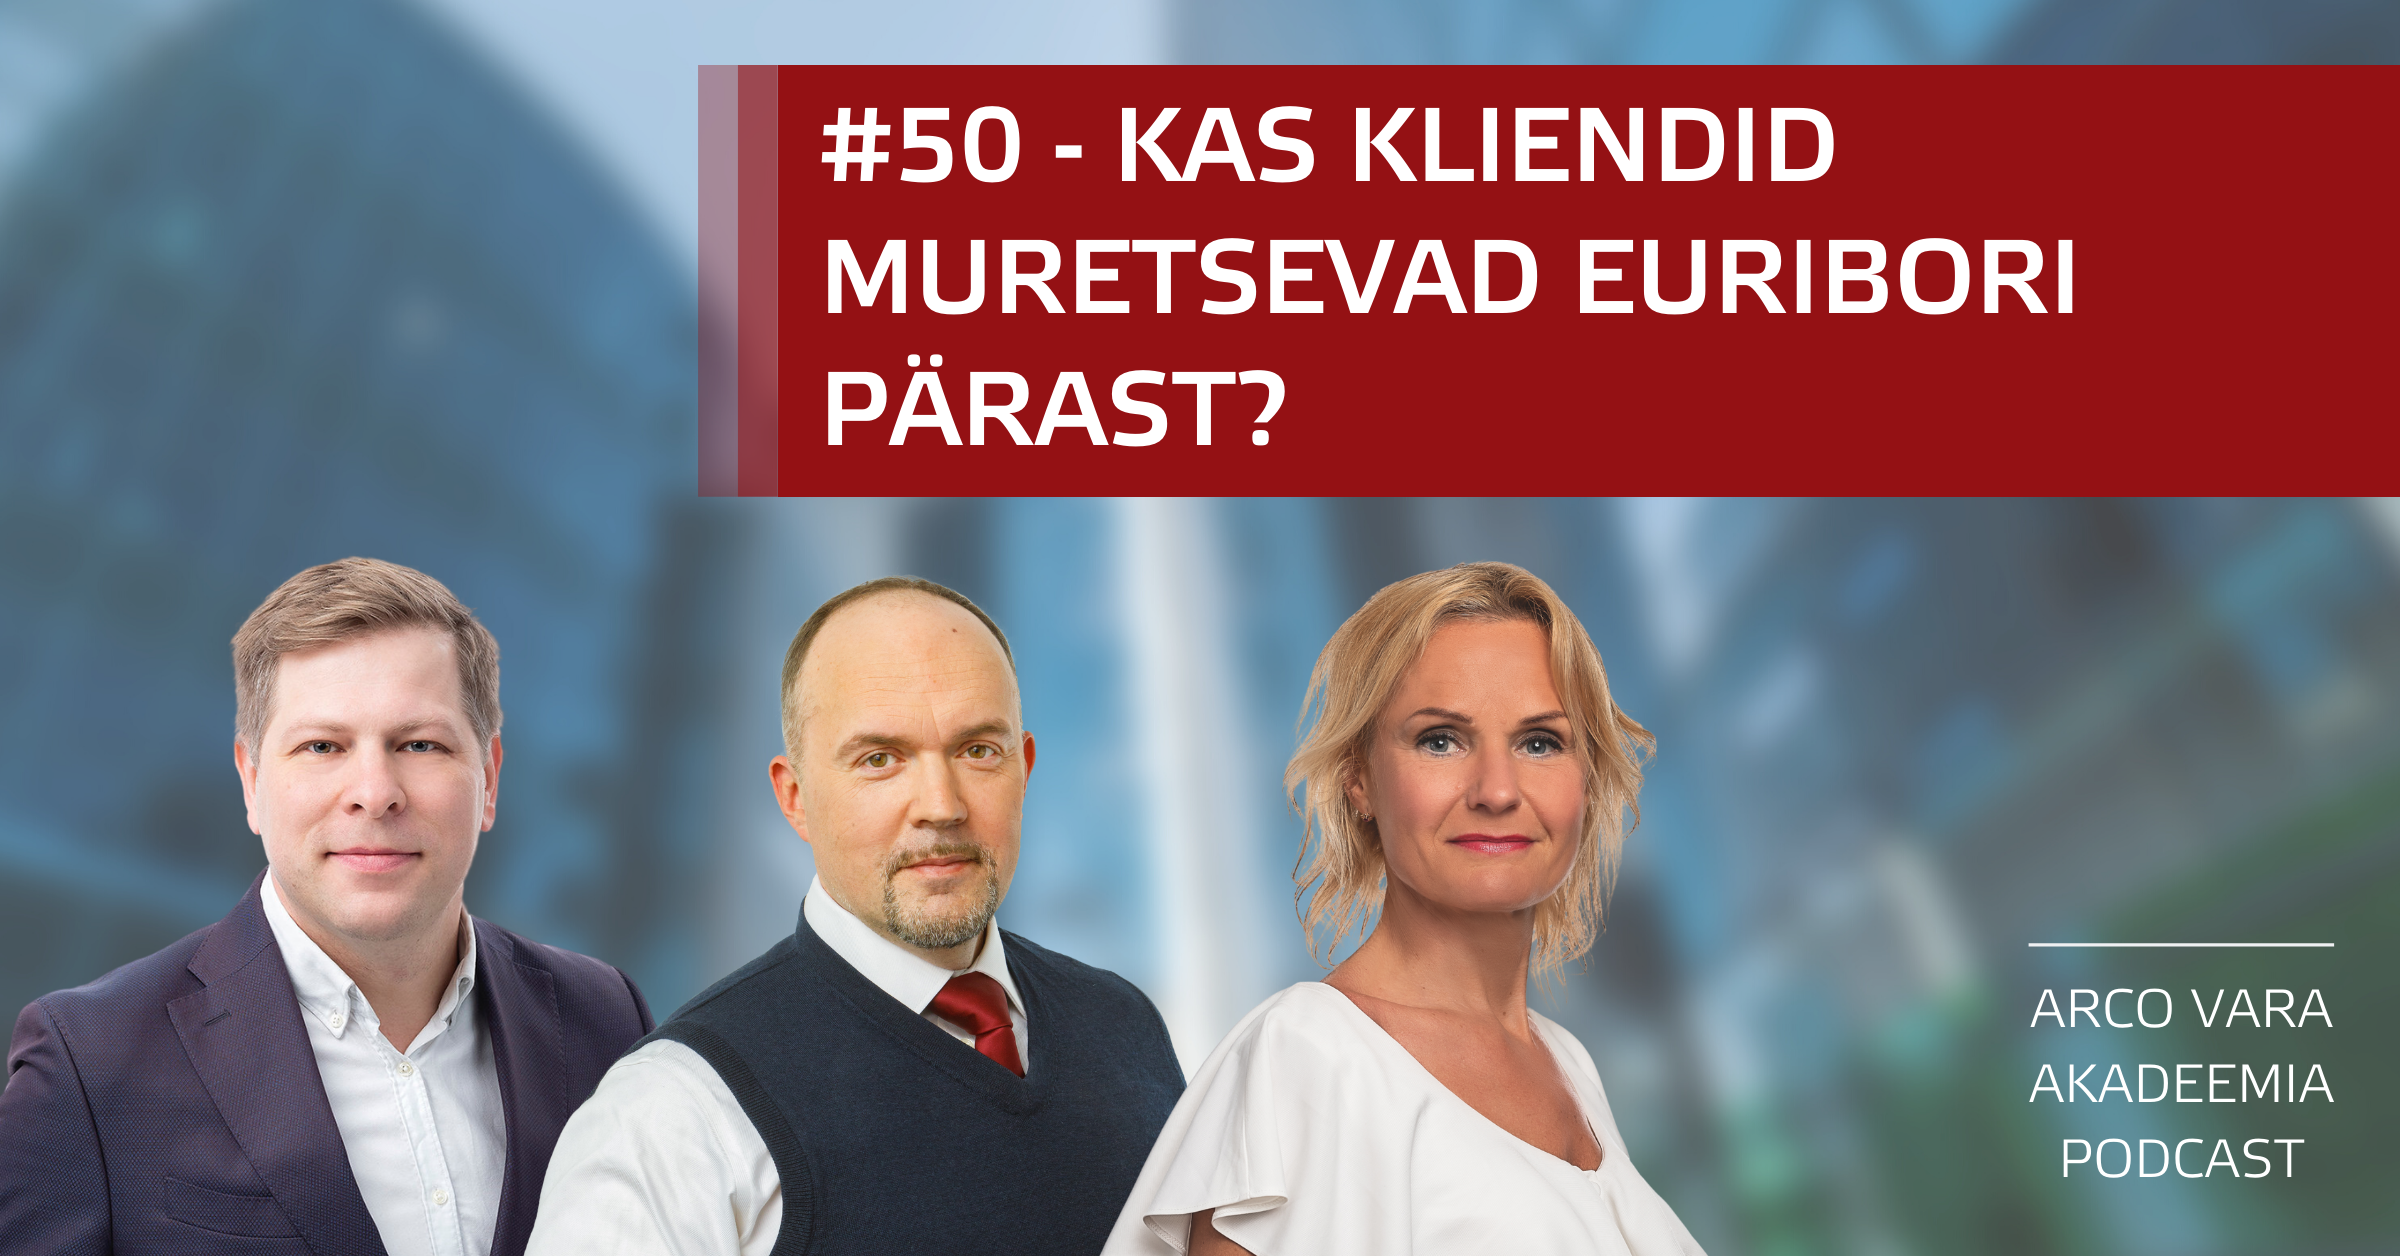 Podcast #50 Kas kliendid muretsevad euribori pärast?